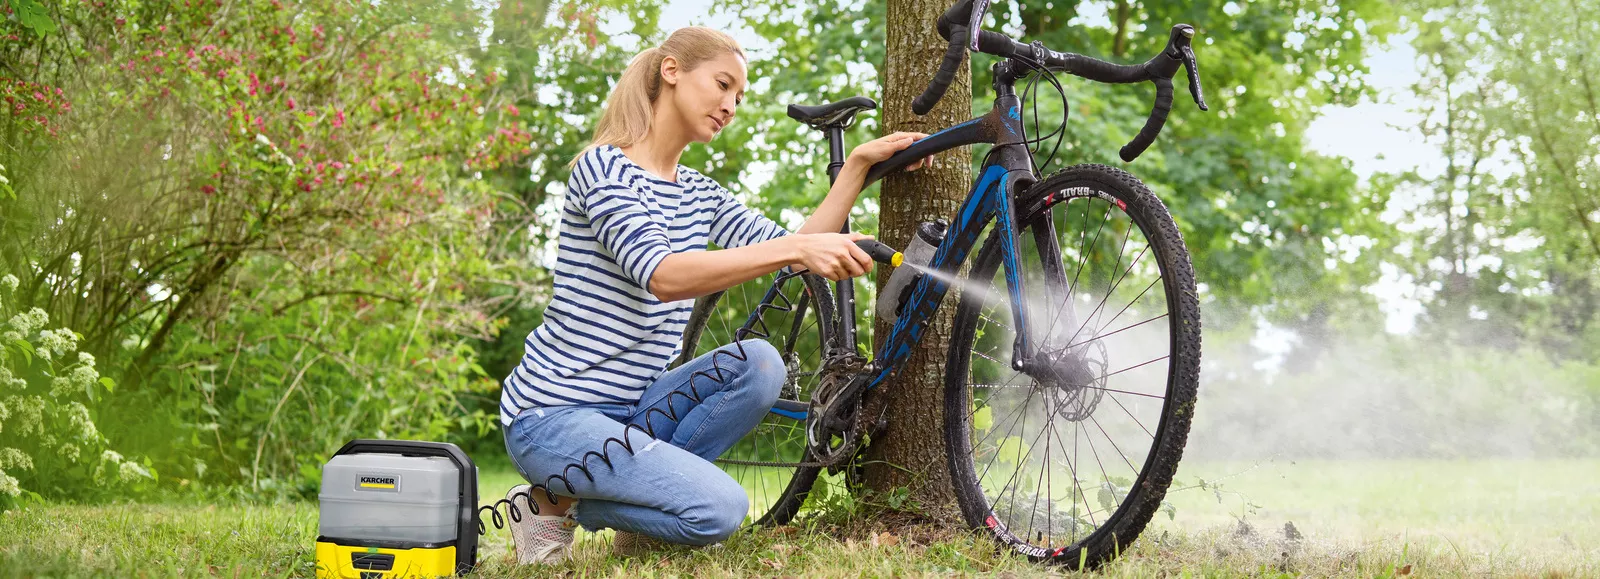 Μια γυναίκα καθαρίζει το ποδήλατό της δίπλα σε ένα δέντρο με ένα κινητό καθαριστικό εξωτερικών χώρων Kärcher